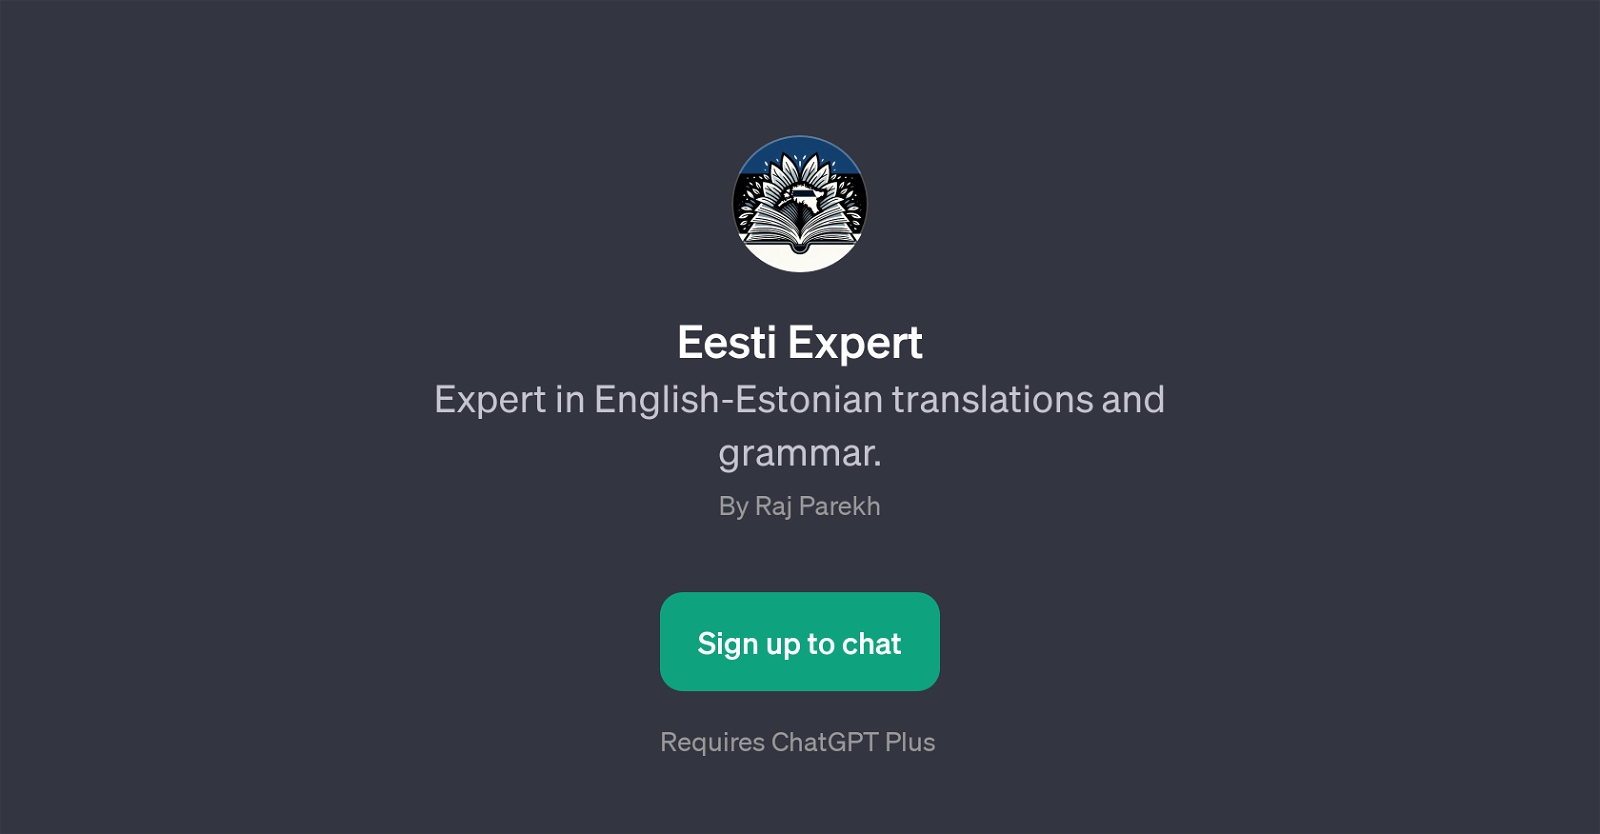 Eesti Expert website